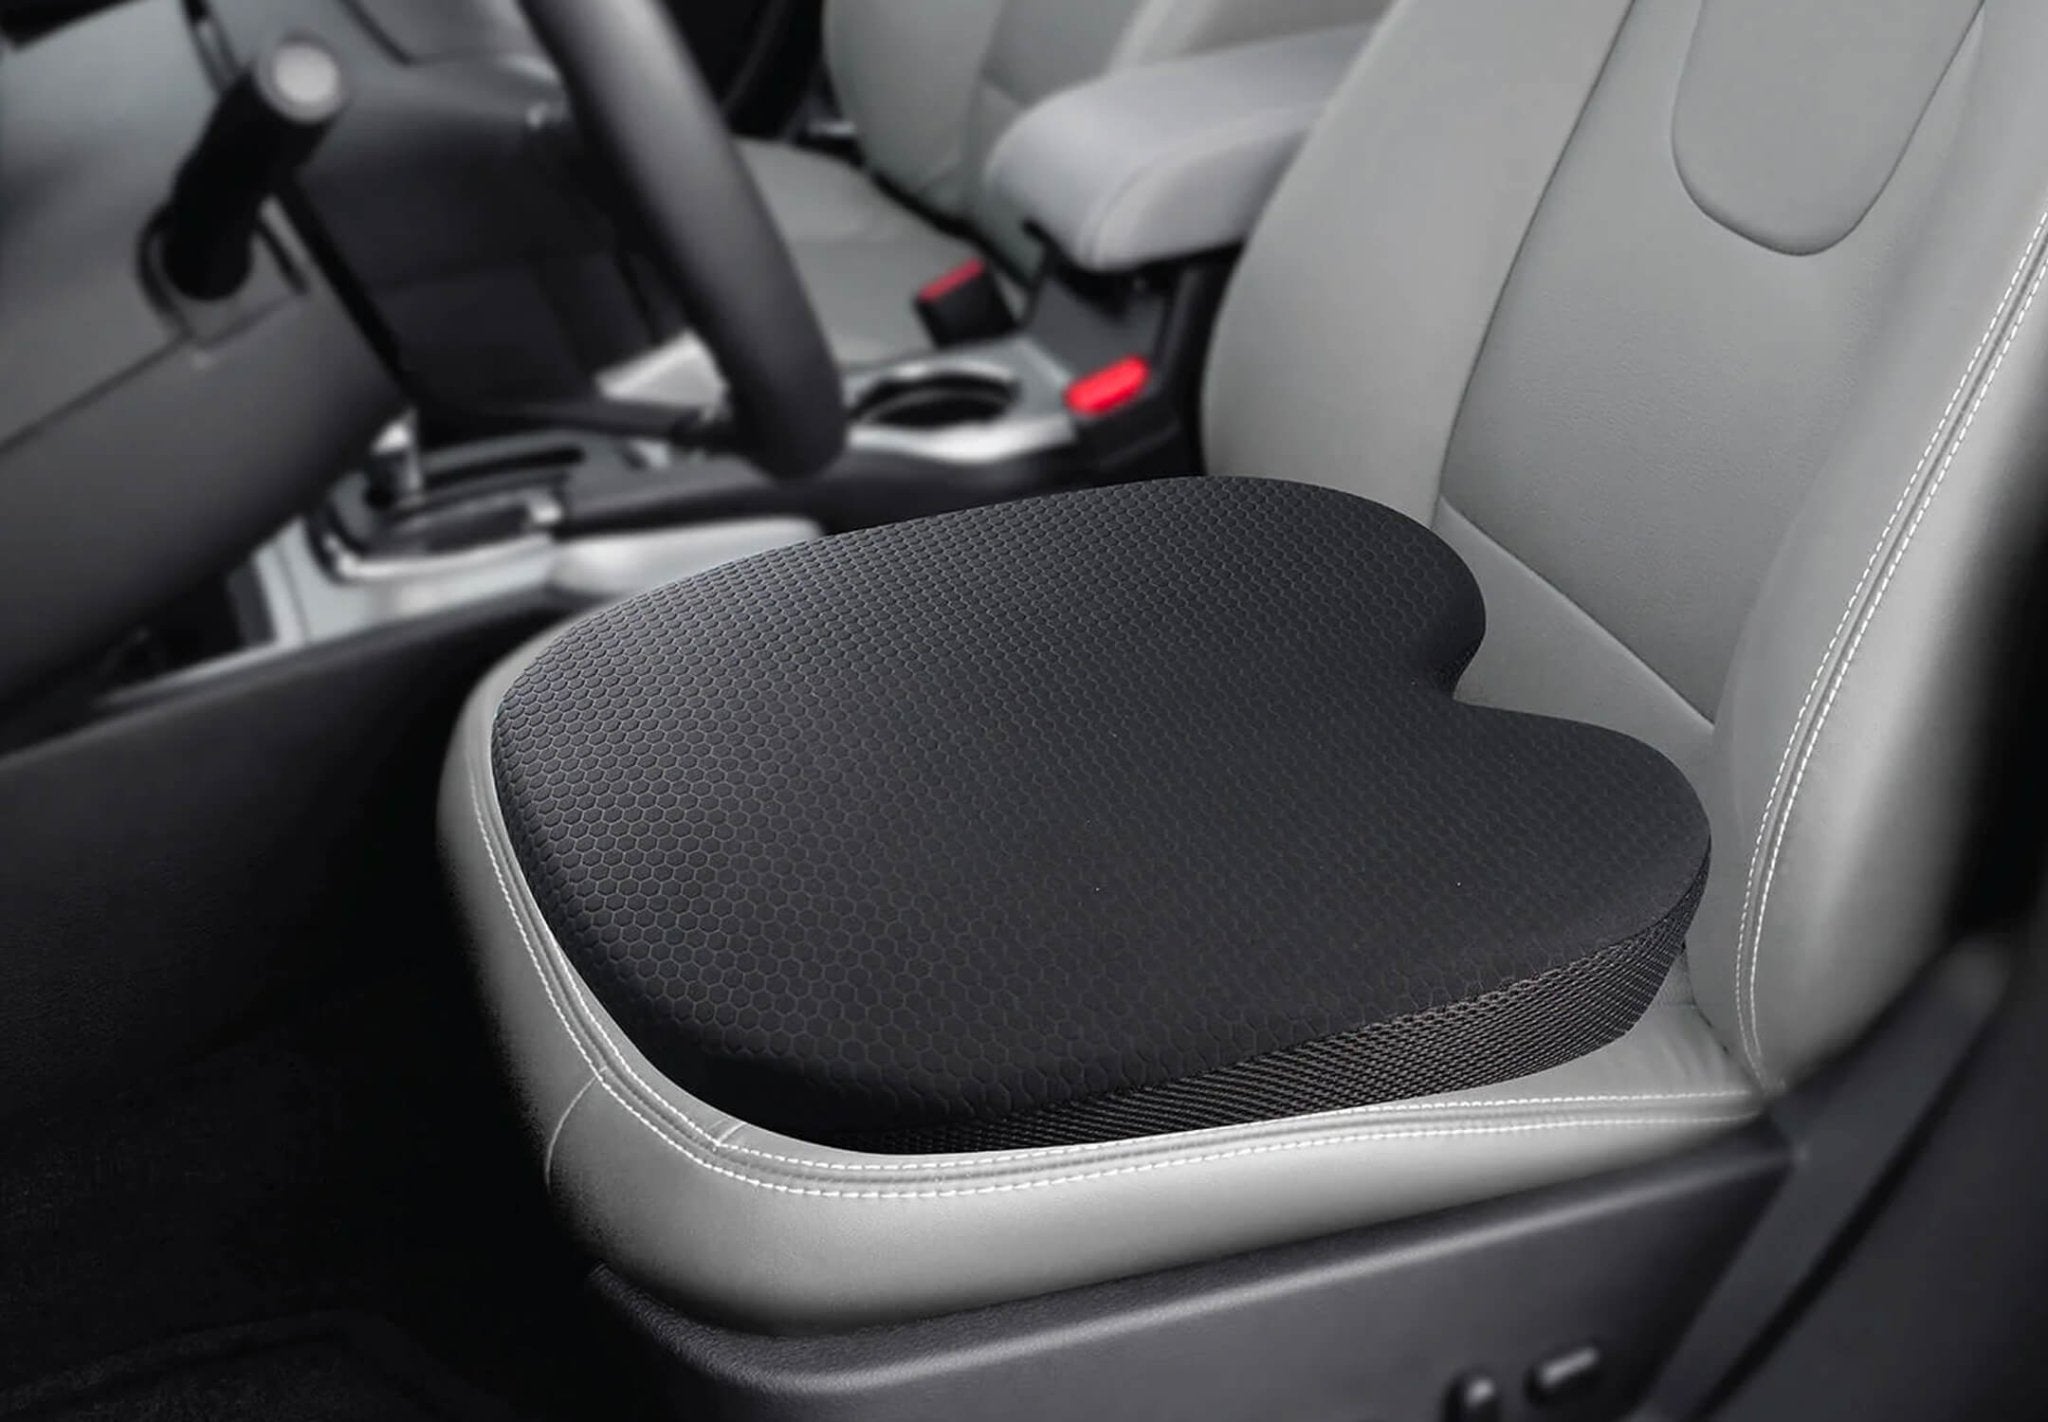  Automotive Seat Cushions - Automotive Seat Cushions